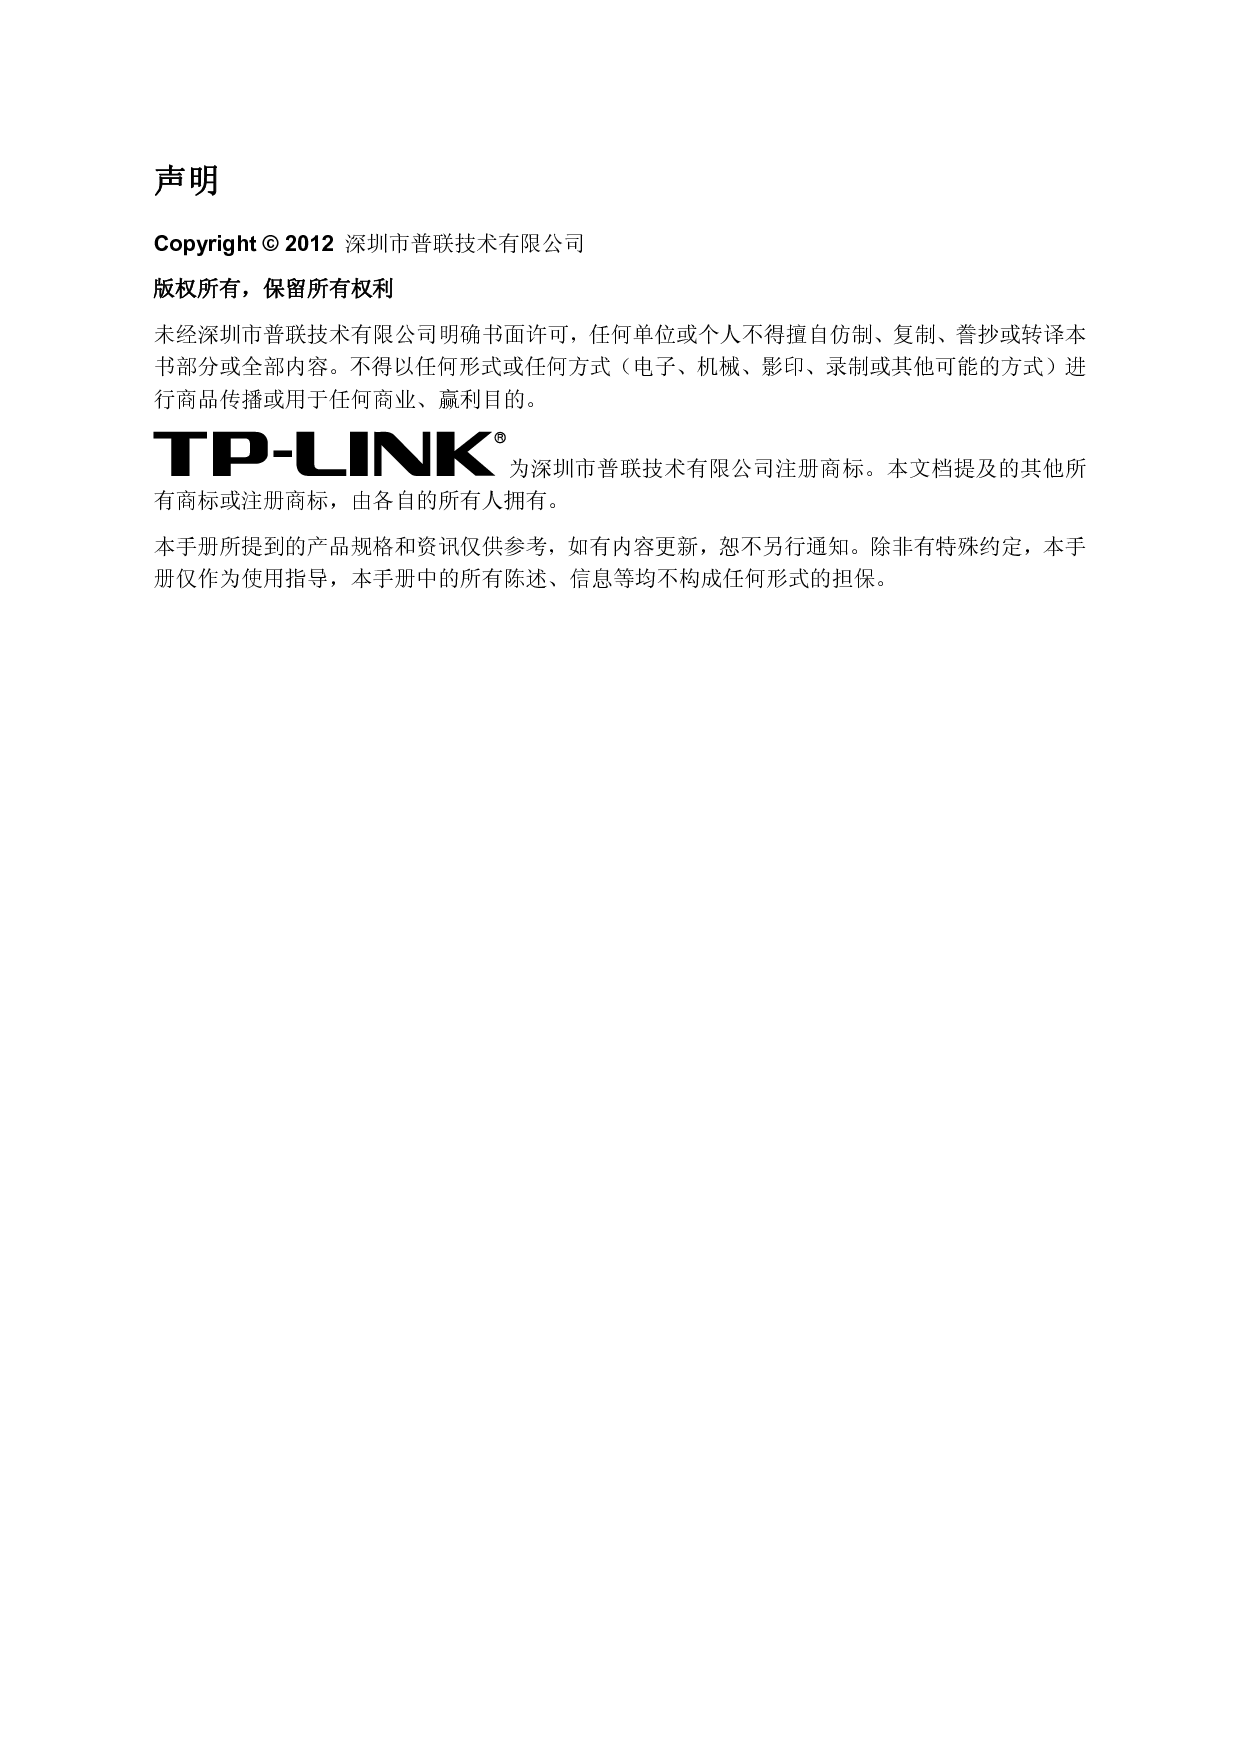 普联 TP-Link TL-WR840N 第三版 设置指南 第1页